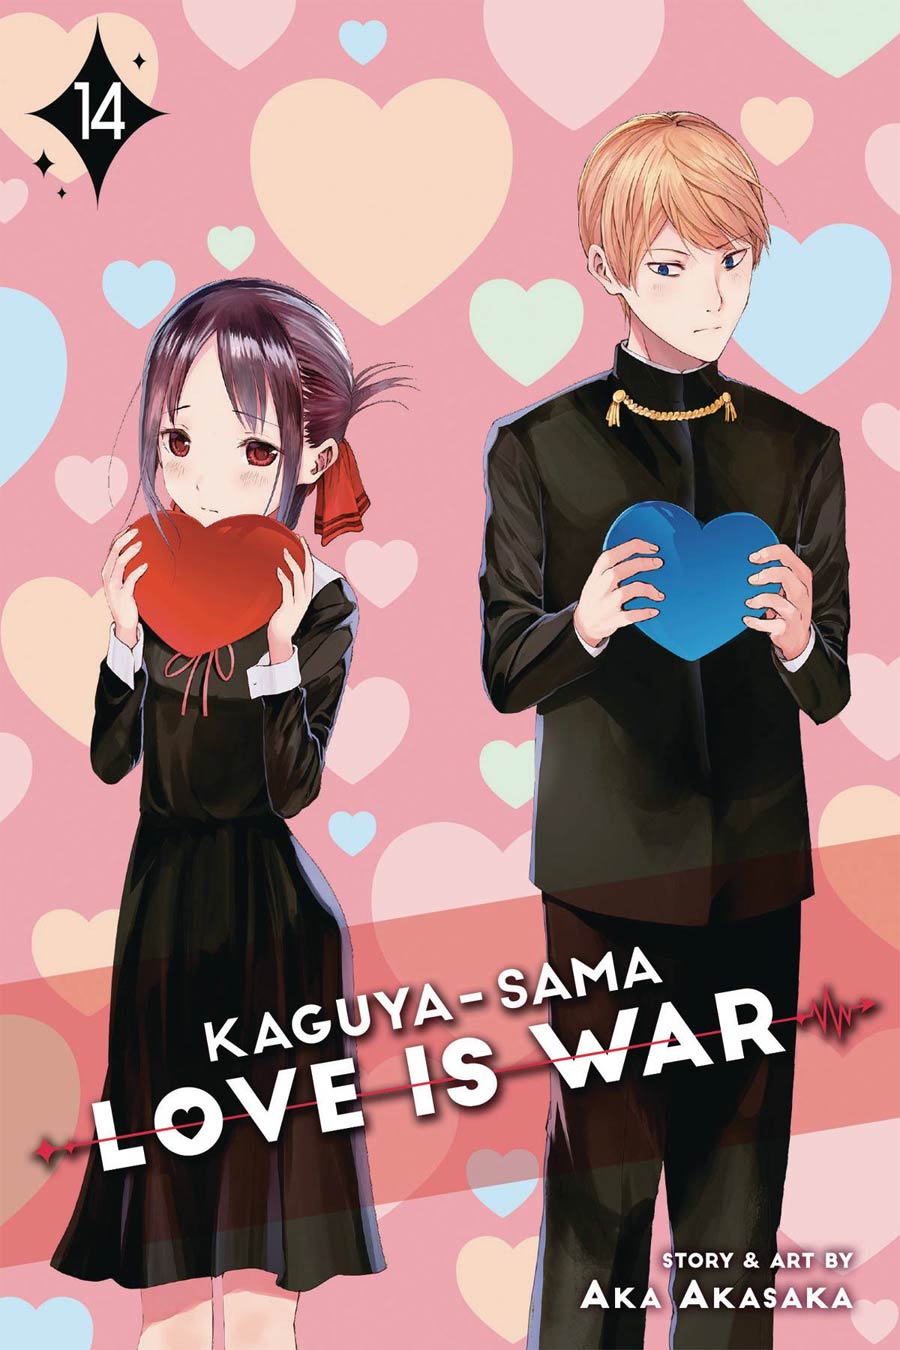 Kaguya-Sama Love Is War Vol 14 GN